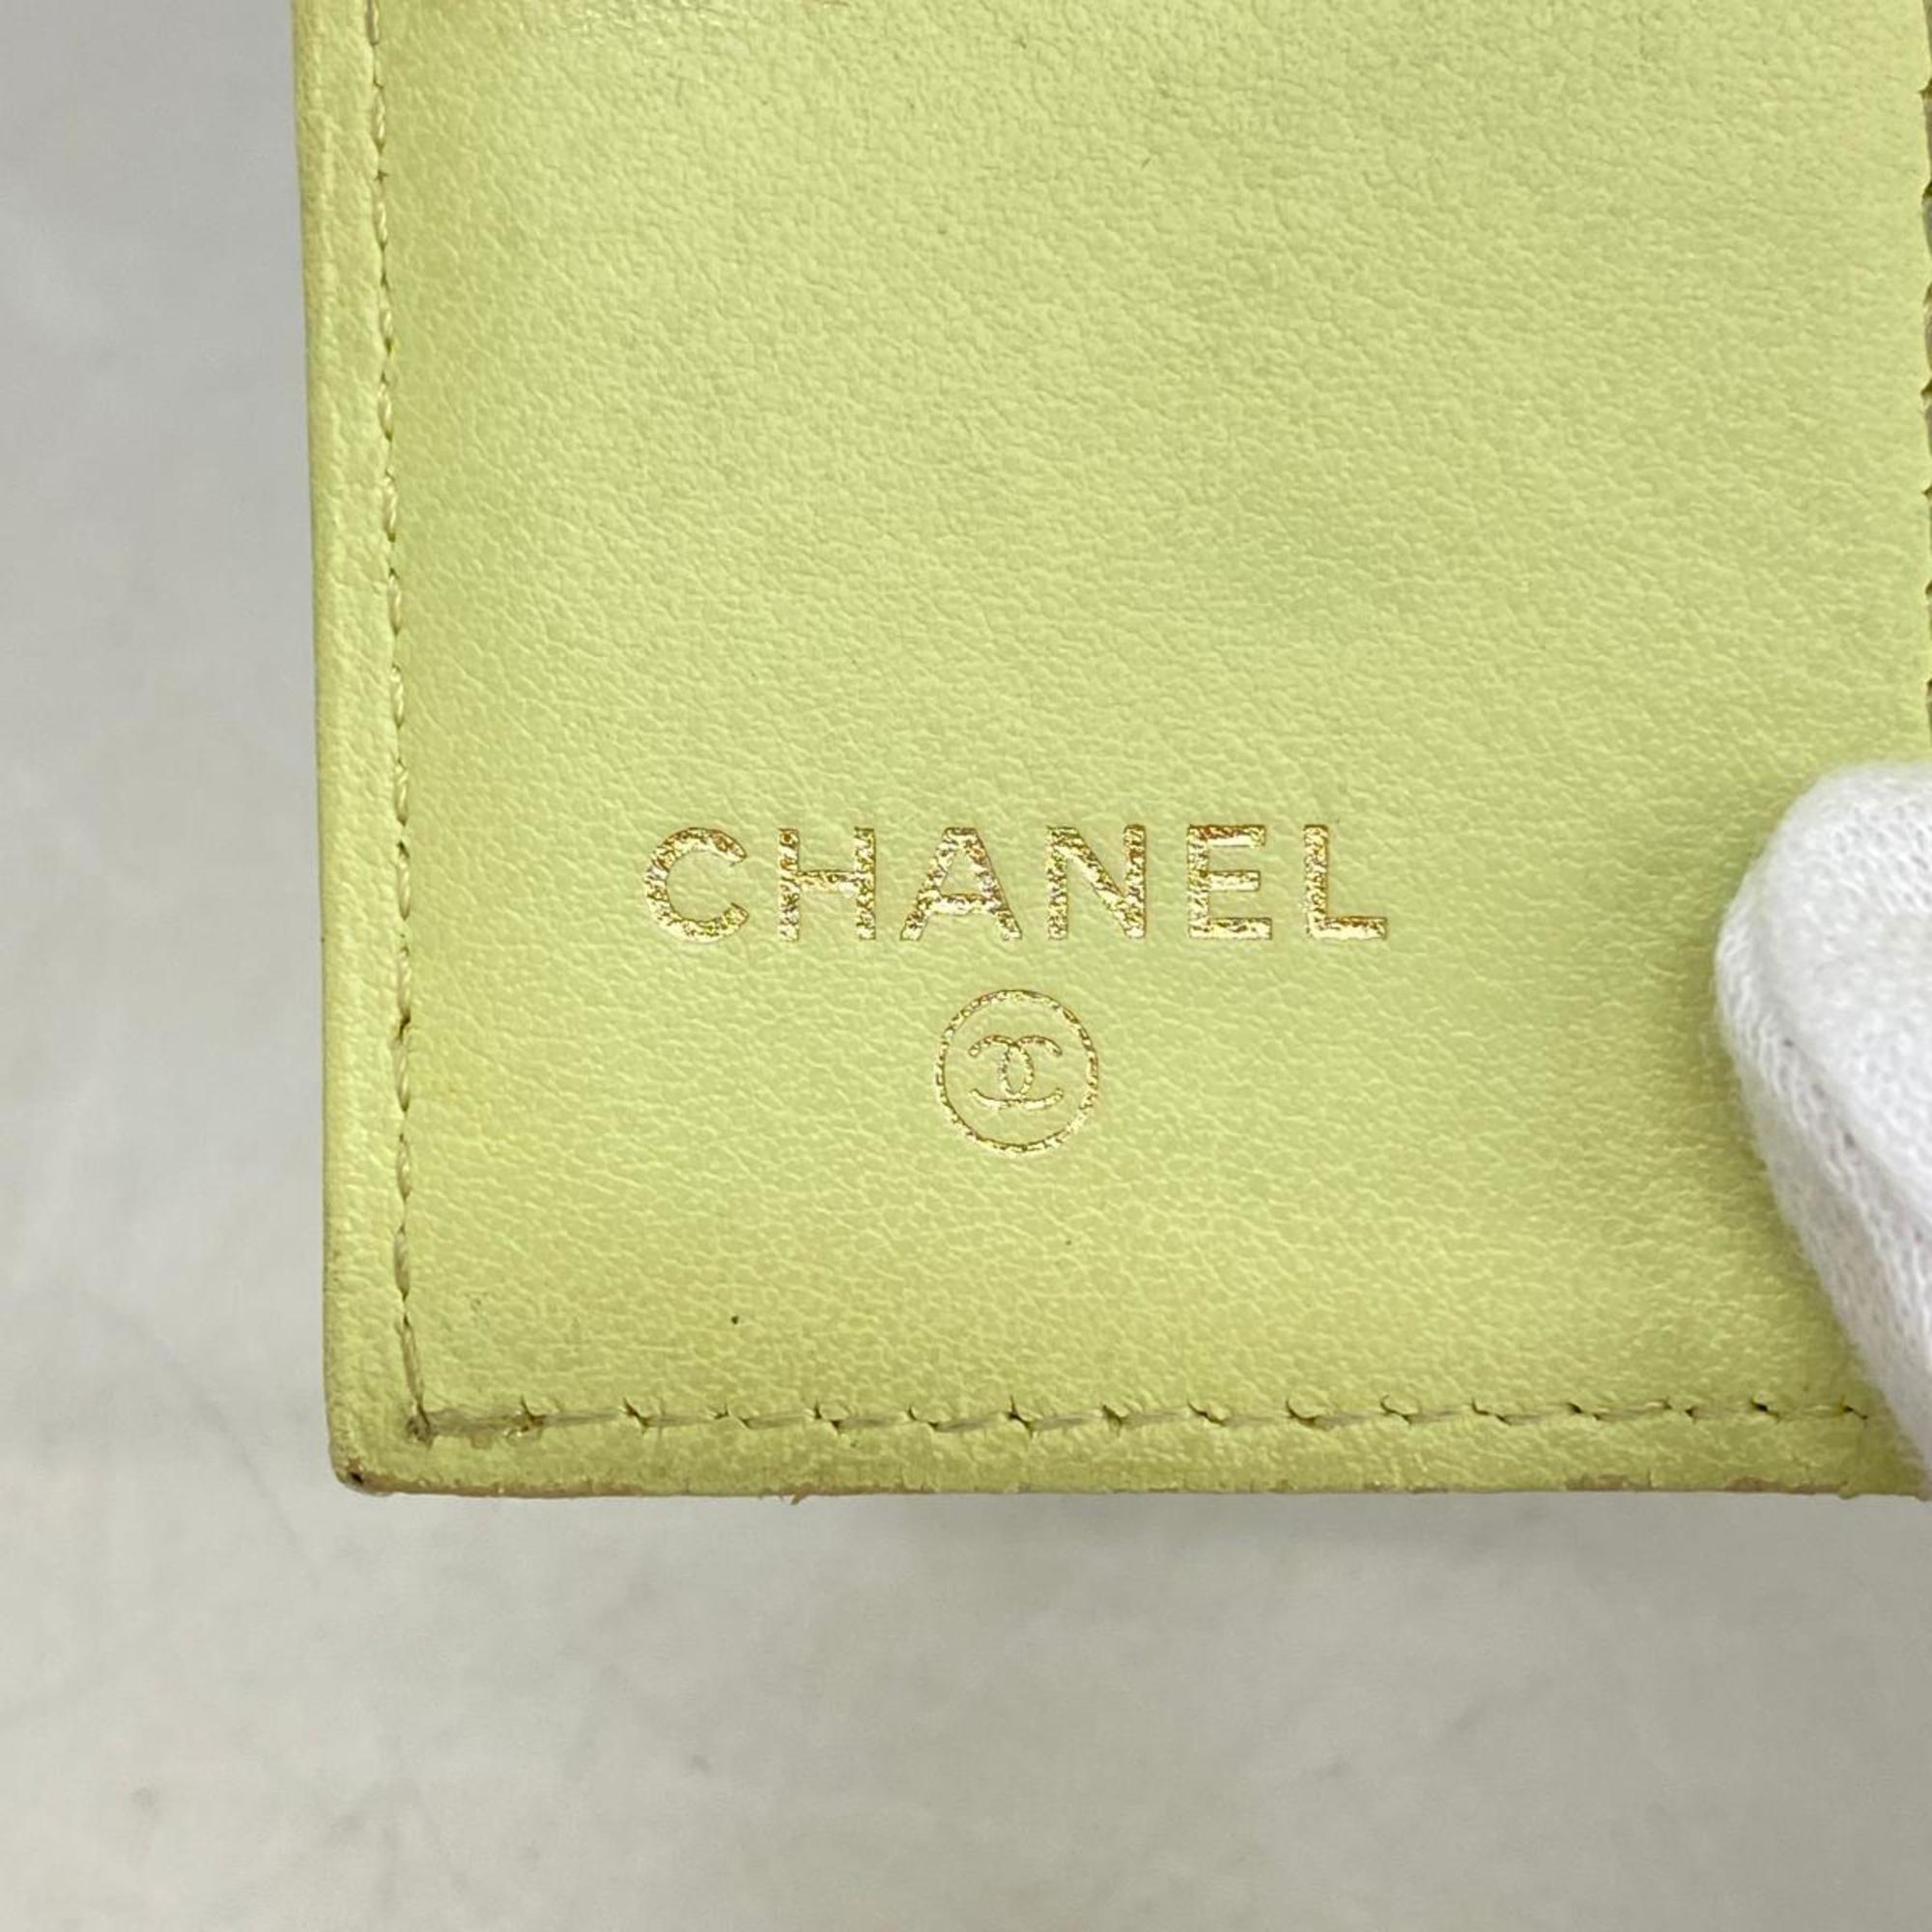 シャネル(Chanel) シャネル キーケース キャビアスキン ライトグリーン   レディース